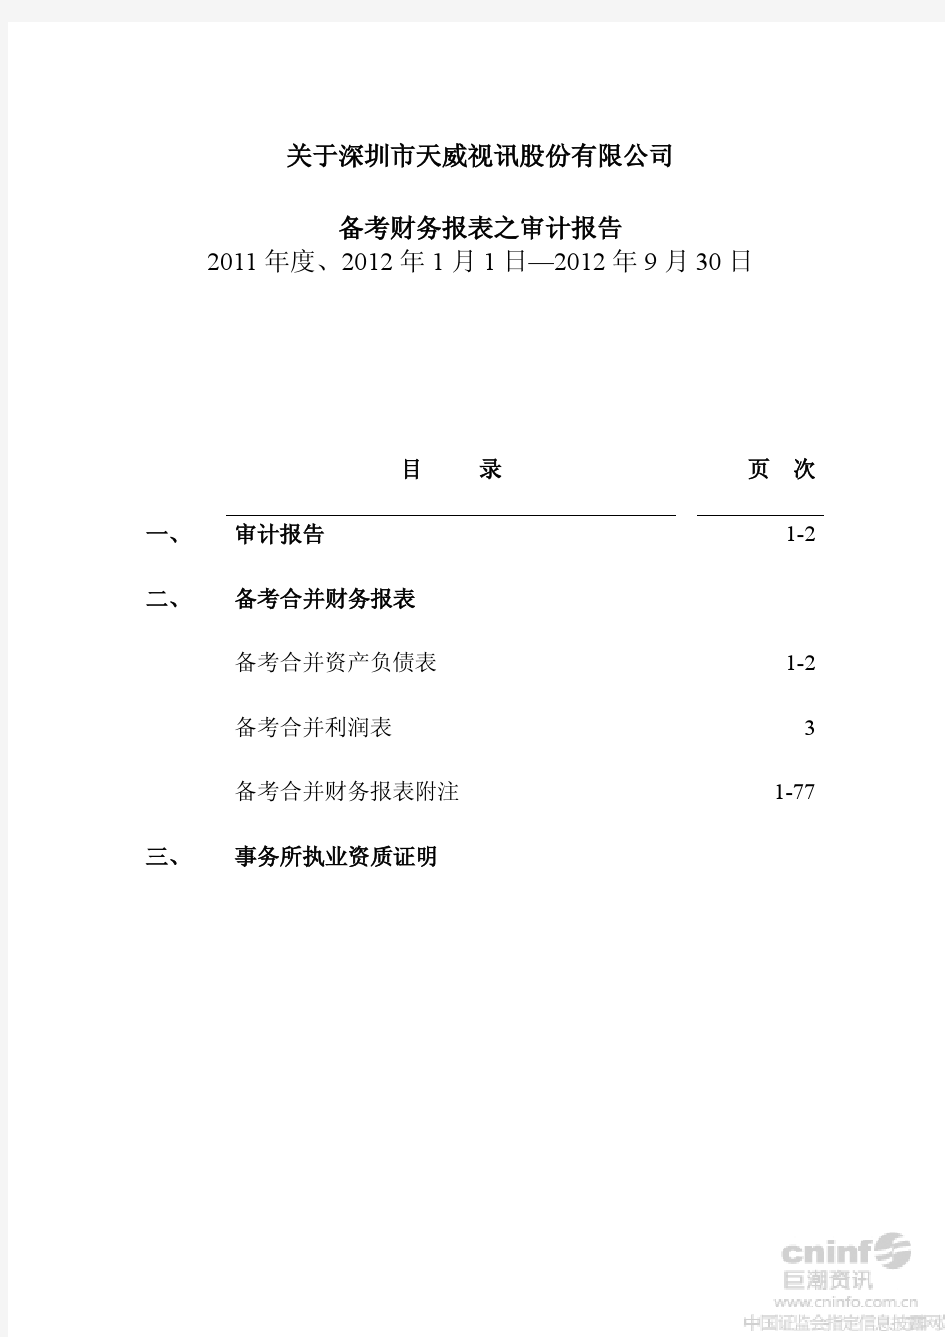 天威视讯：关于公司2012年1-9月、2011年度备考财务报表之审计报告